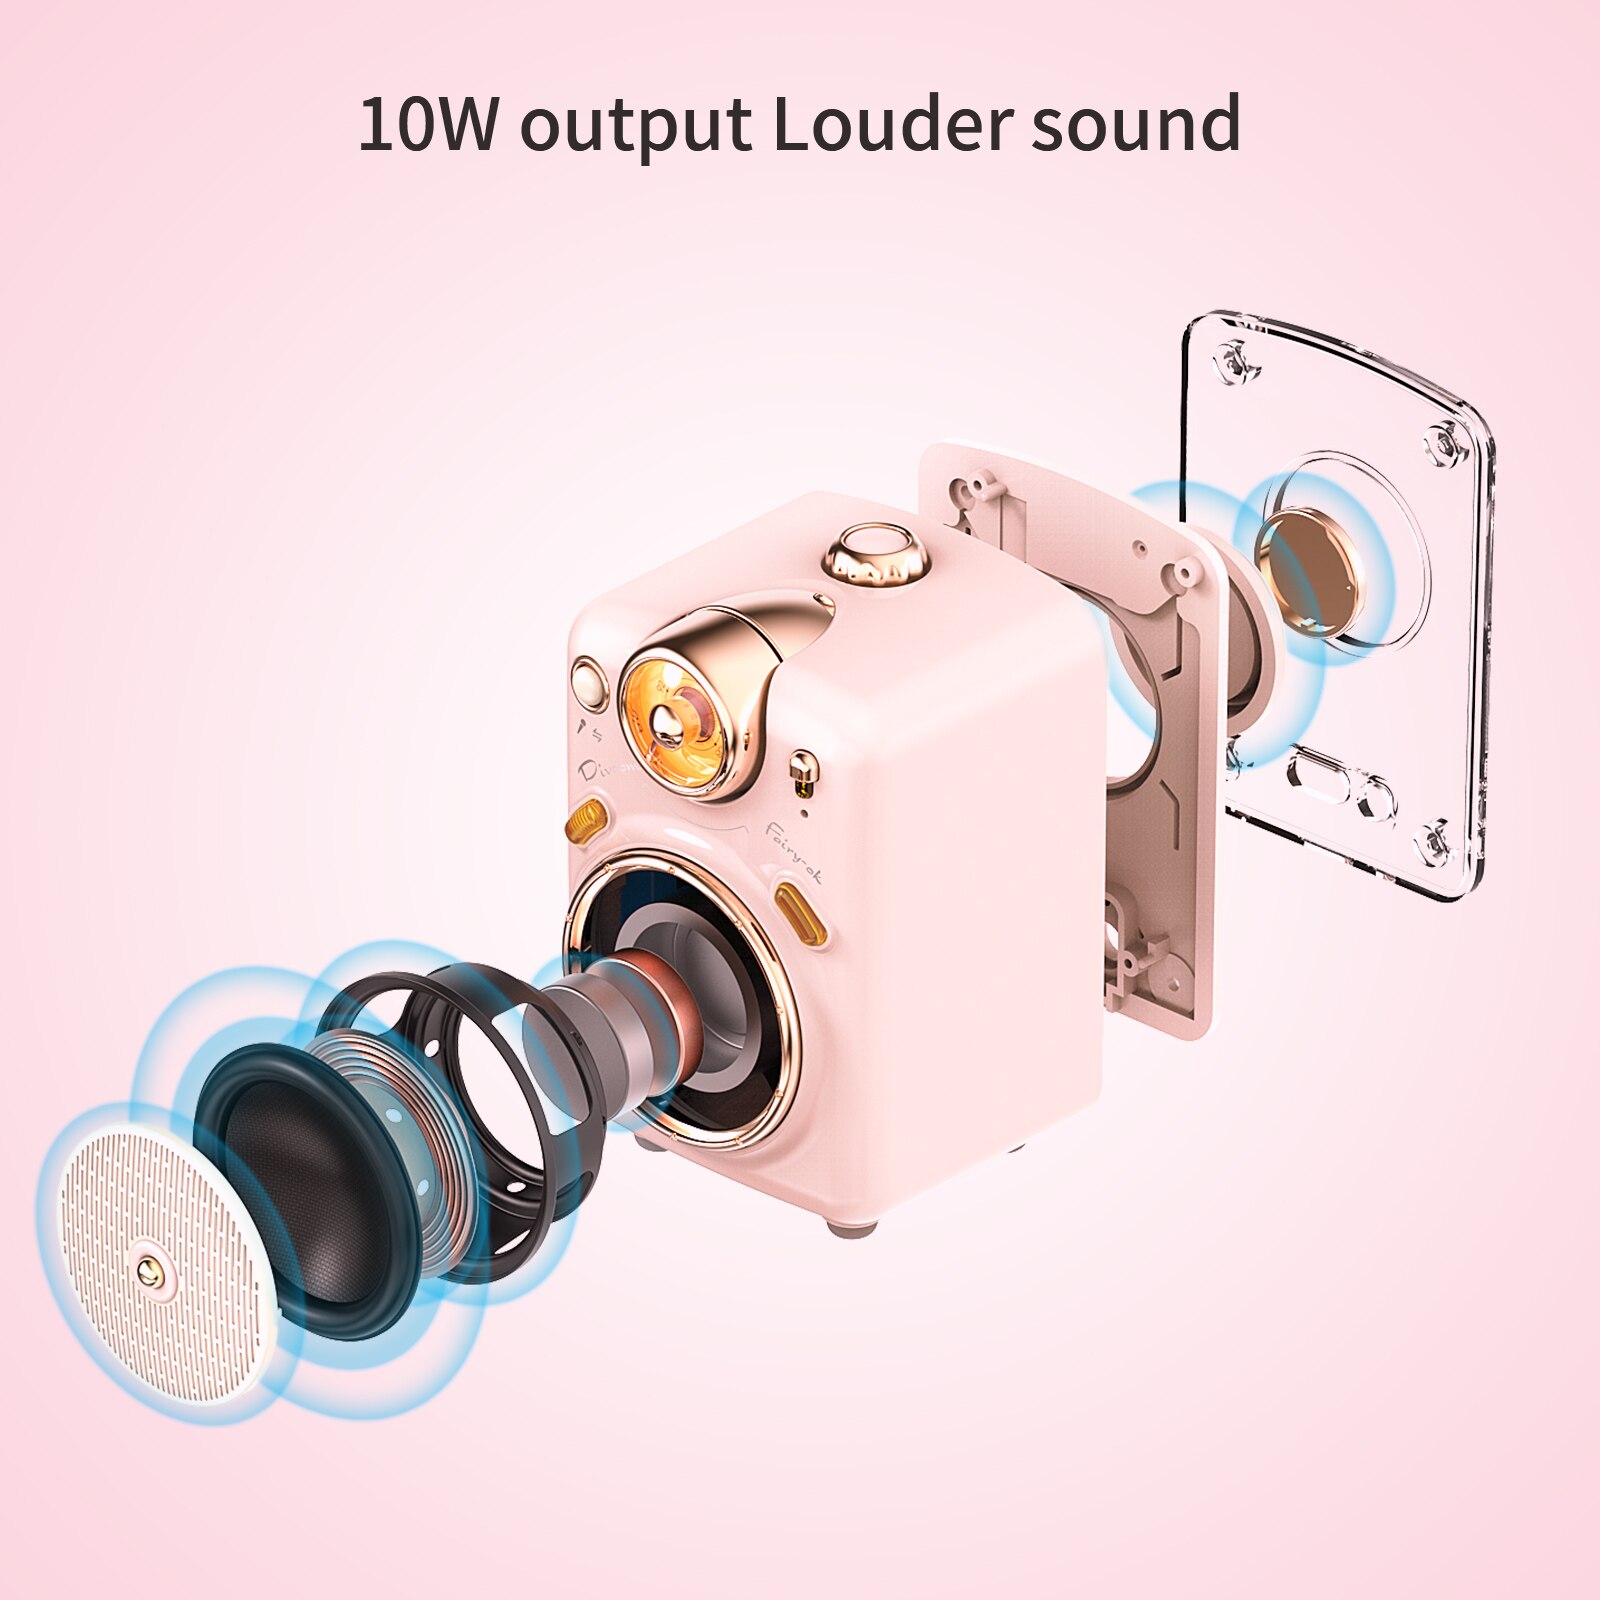 Loa Bluetooth Divoom Fairy-Ok công suất 10W kết hợp micro karaoke đa năng - Hàng chính hãng